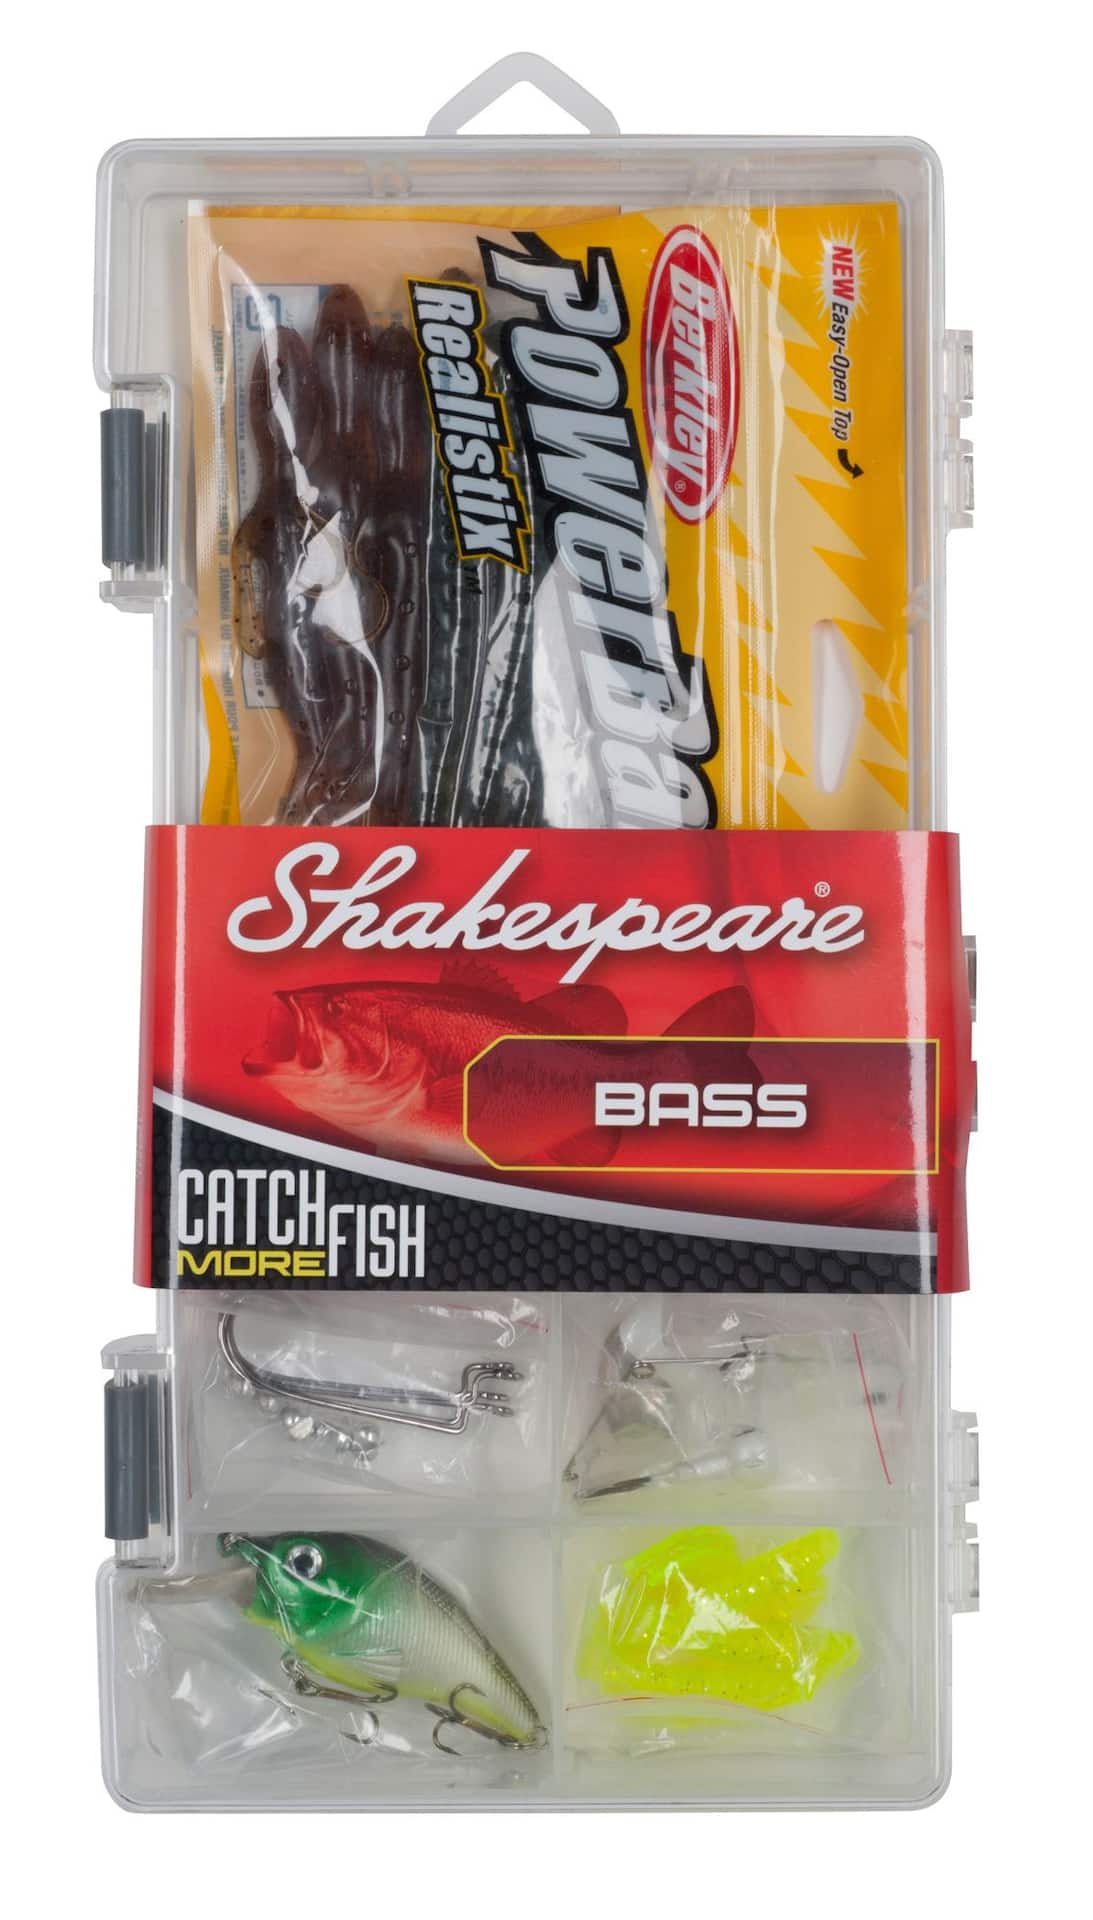 Shakespeare Bass Tackle Box Kit